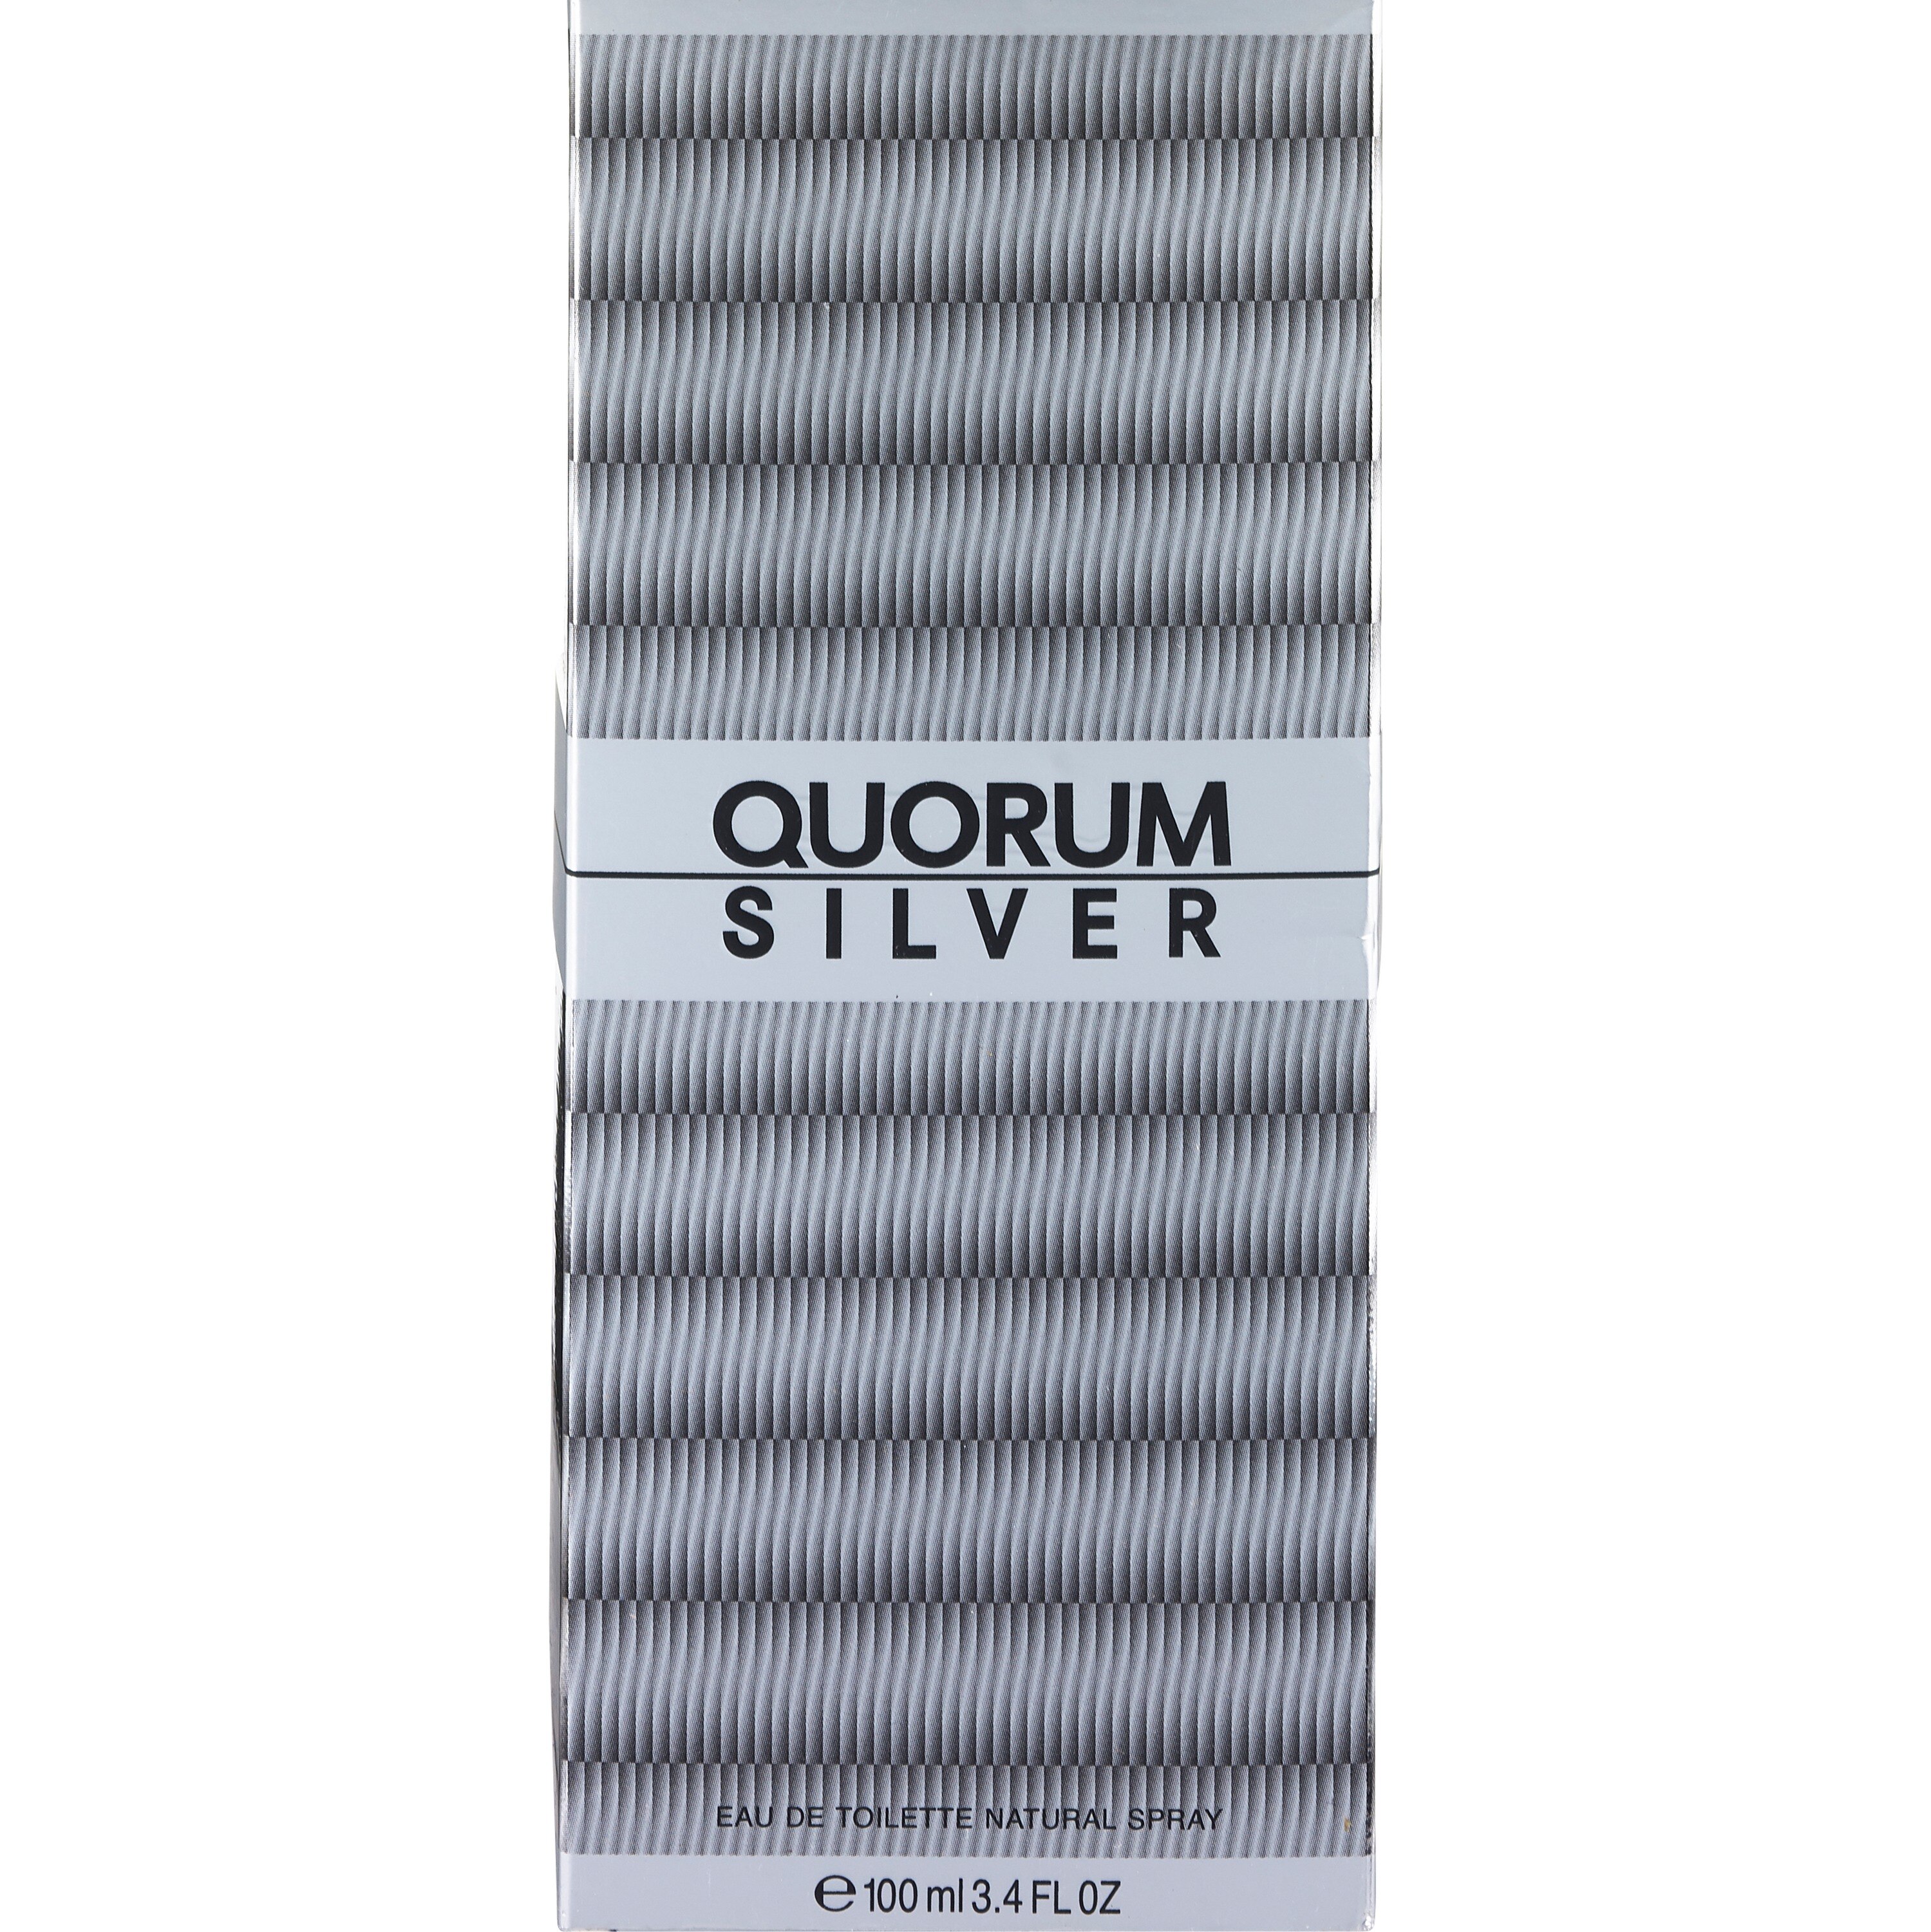 Quorum Silver by Puig Eau De Toilette, 3.4 OZ